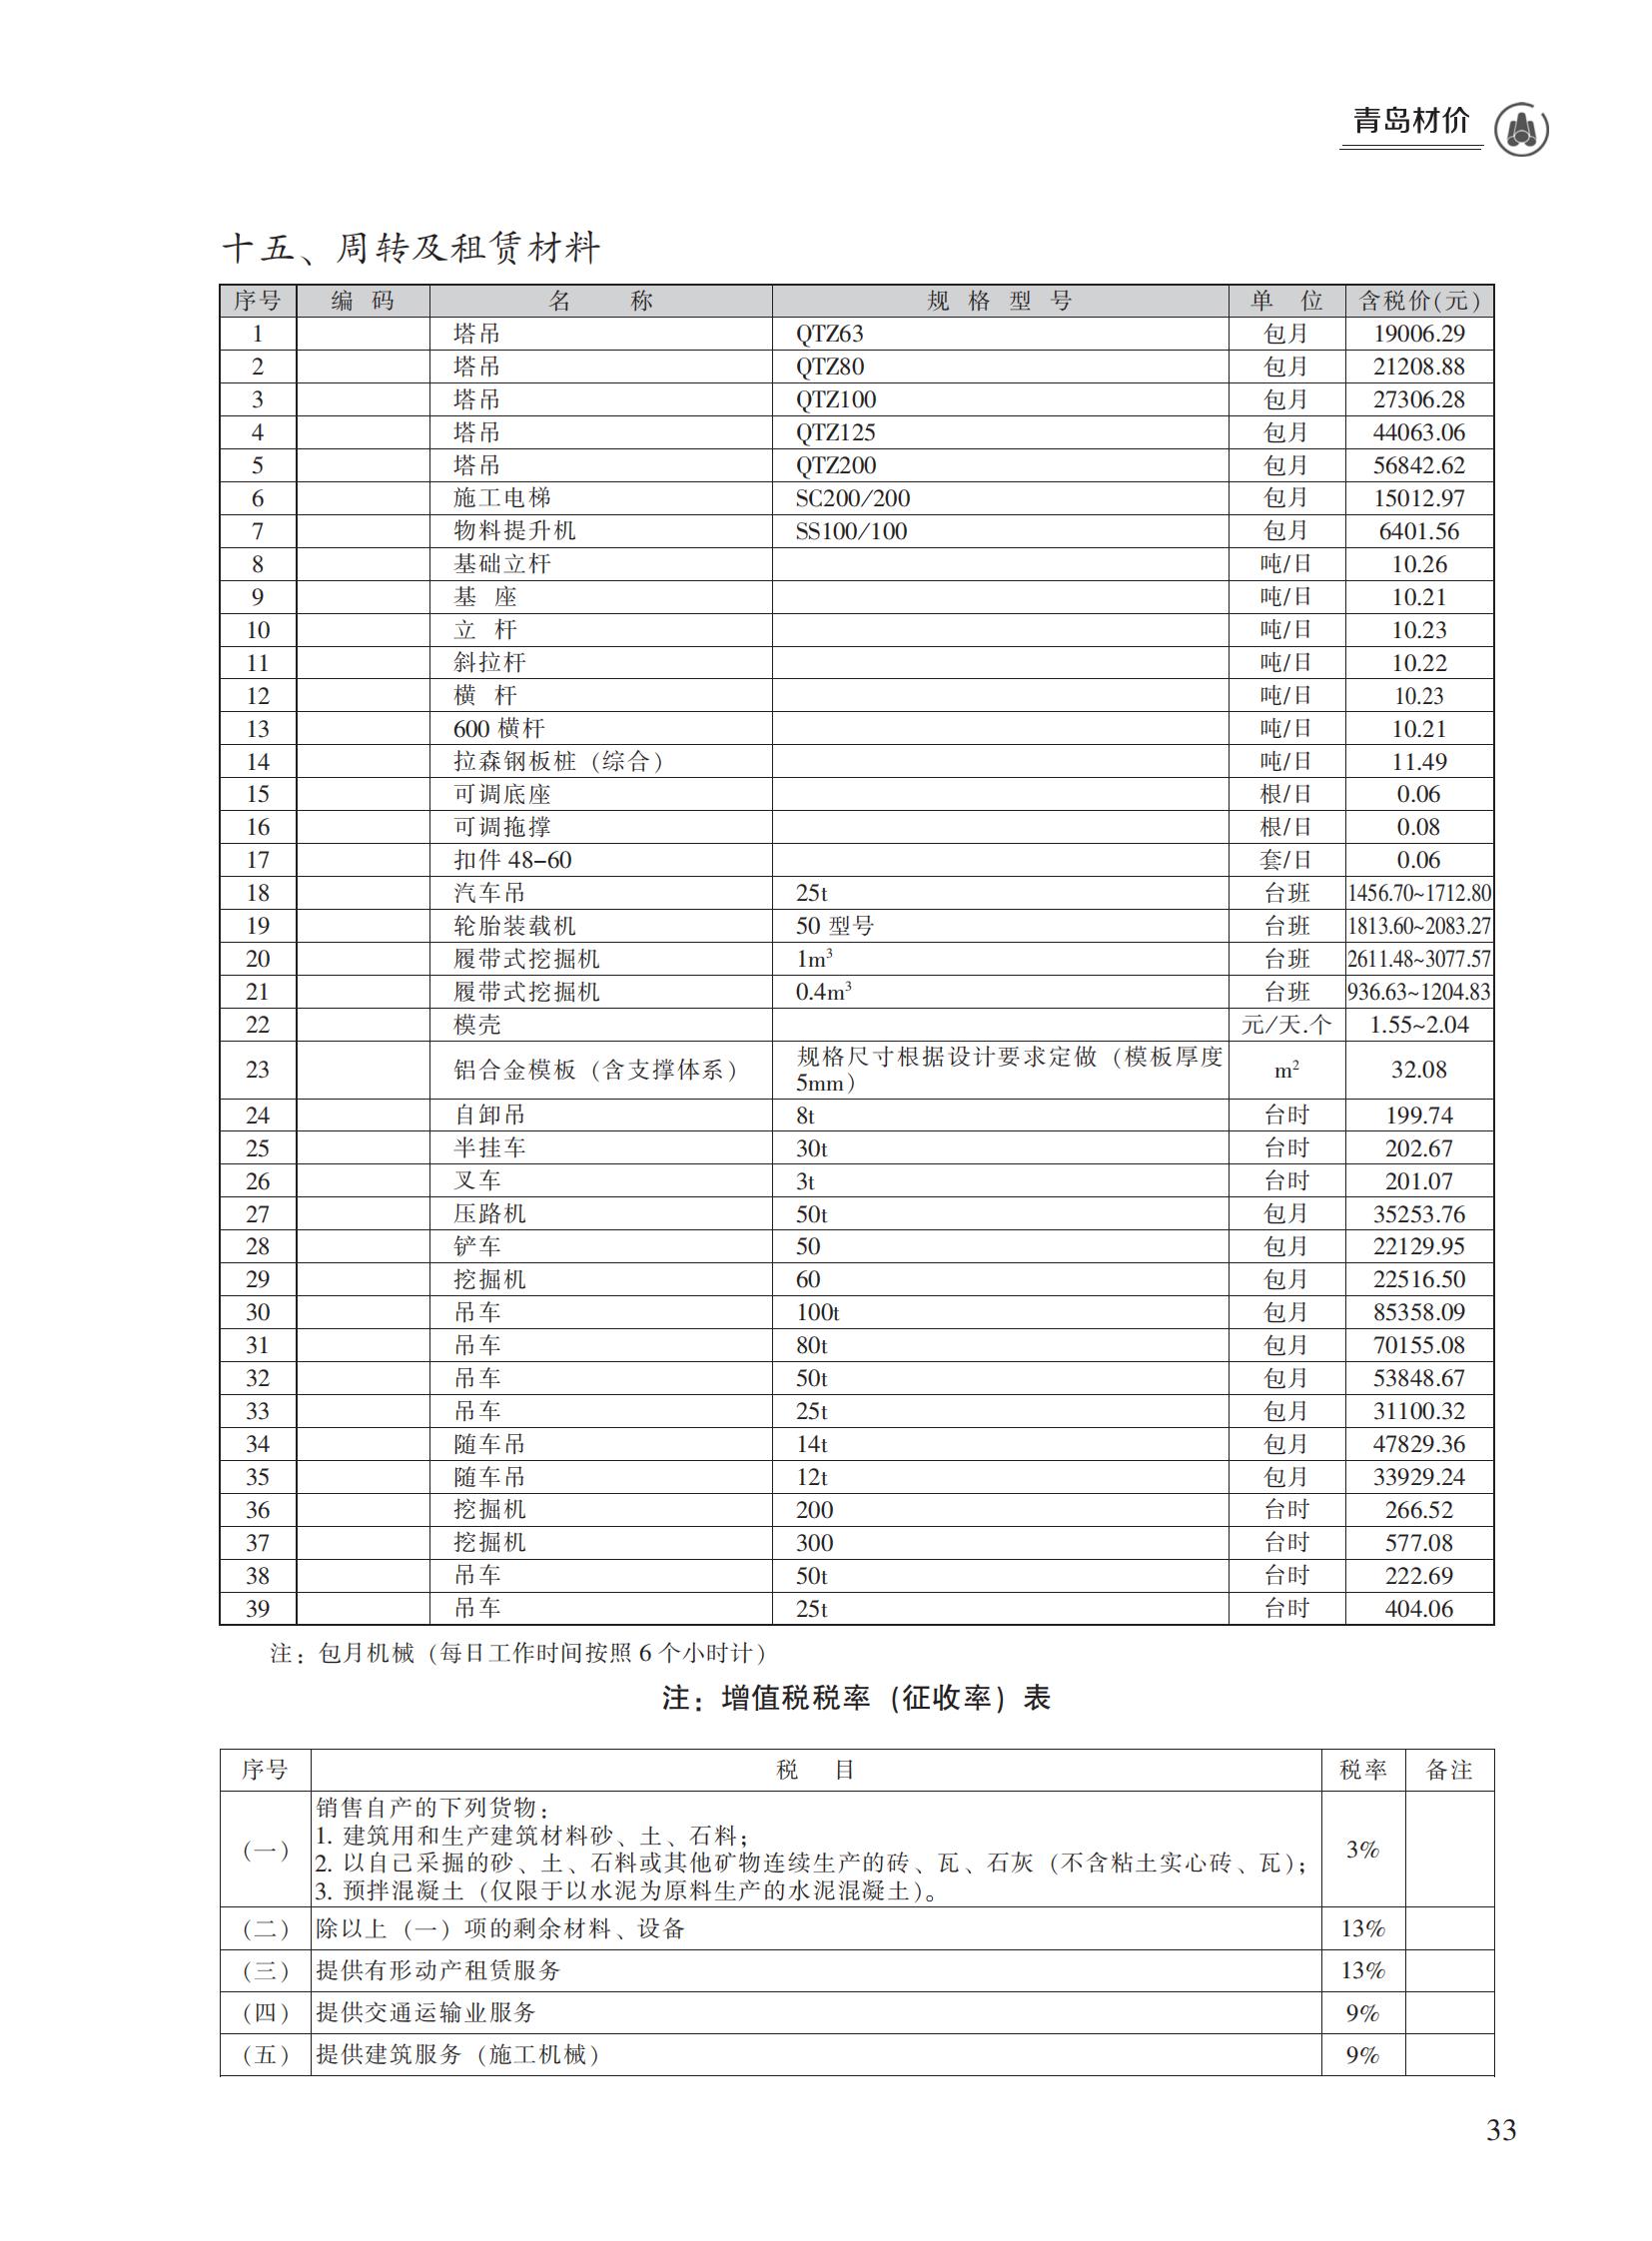 2023年5月青岛市建设工程材料价格及造价指数_32.jpg